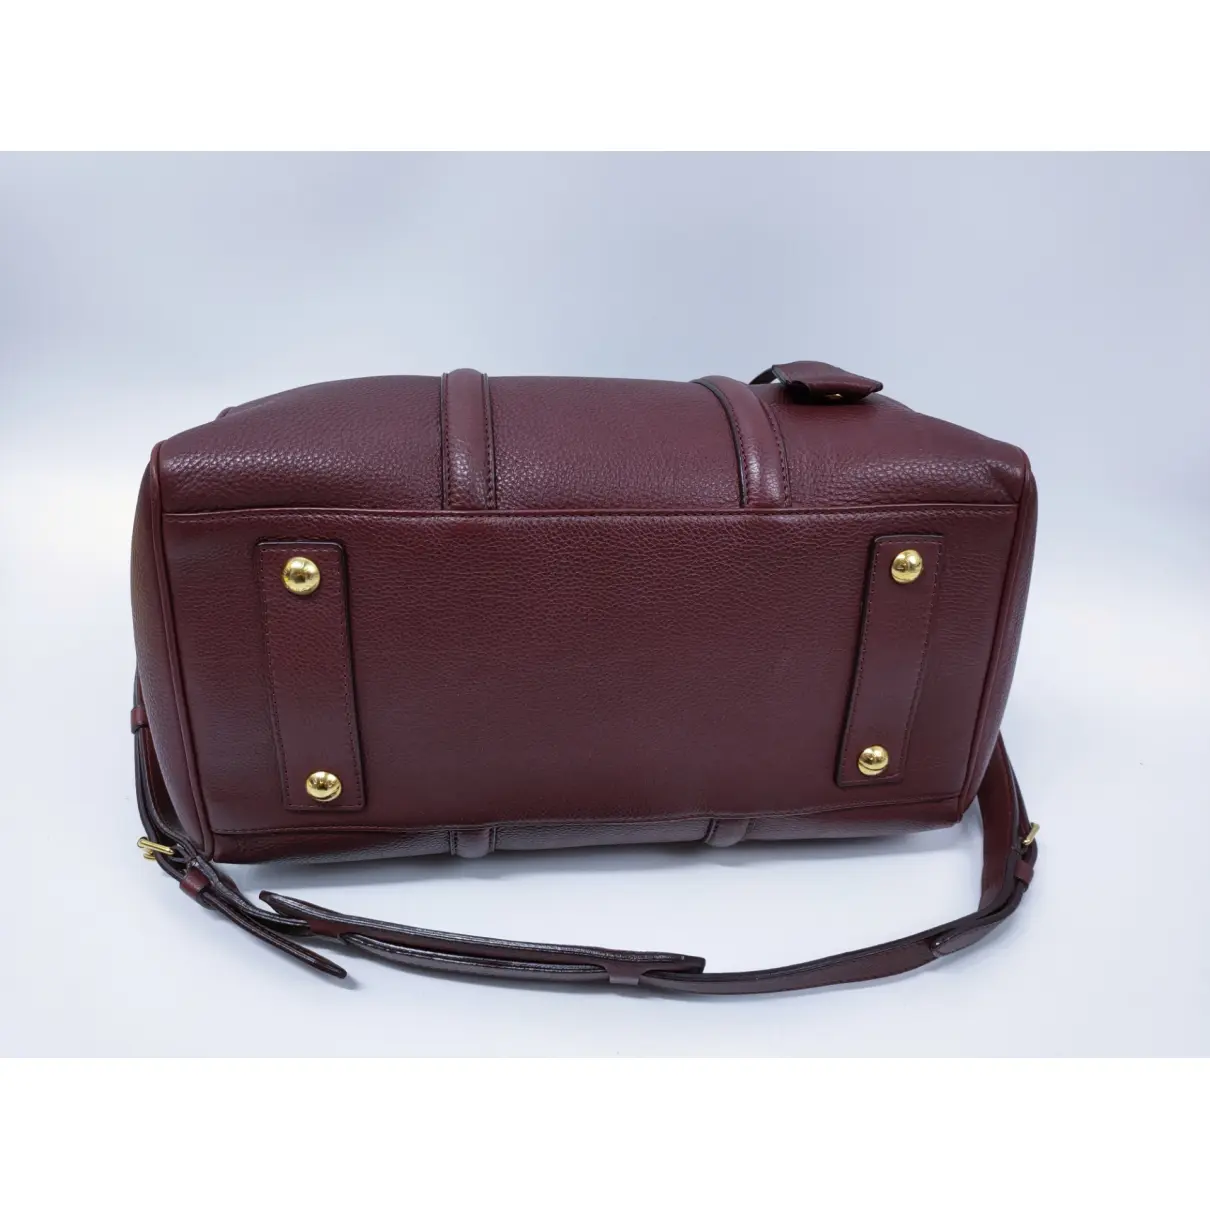 Sofia Coppola leather handbag Louis Vuitton